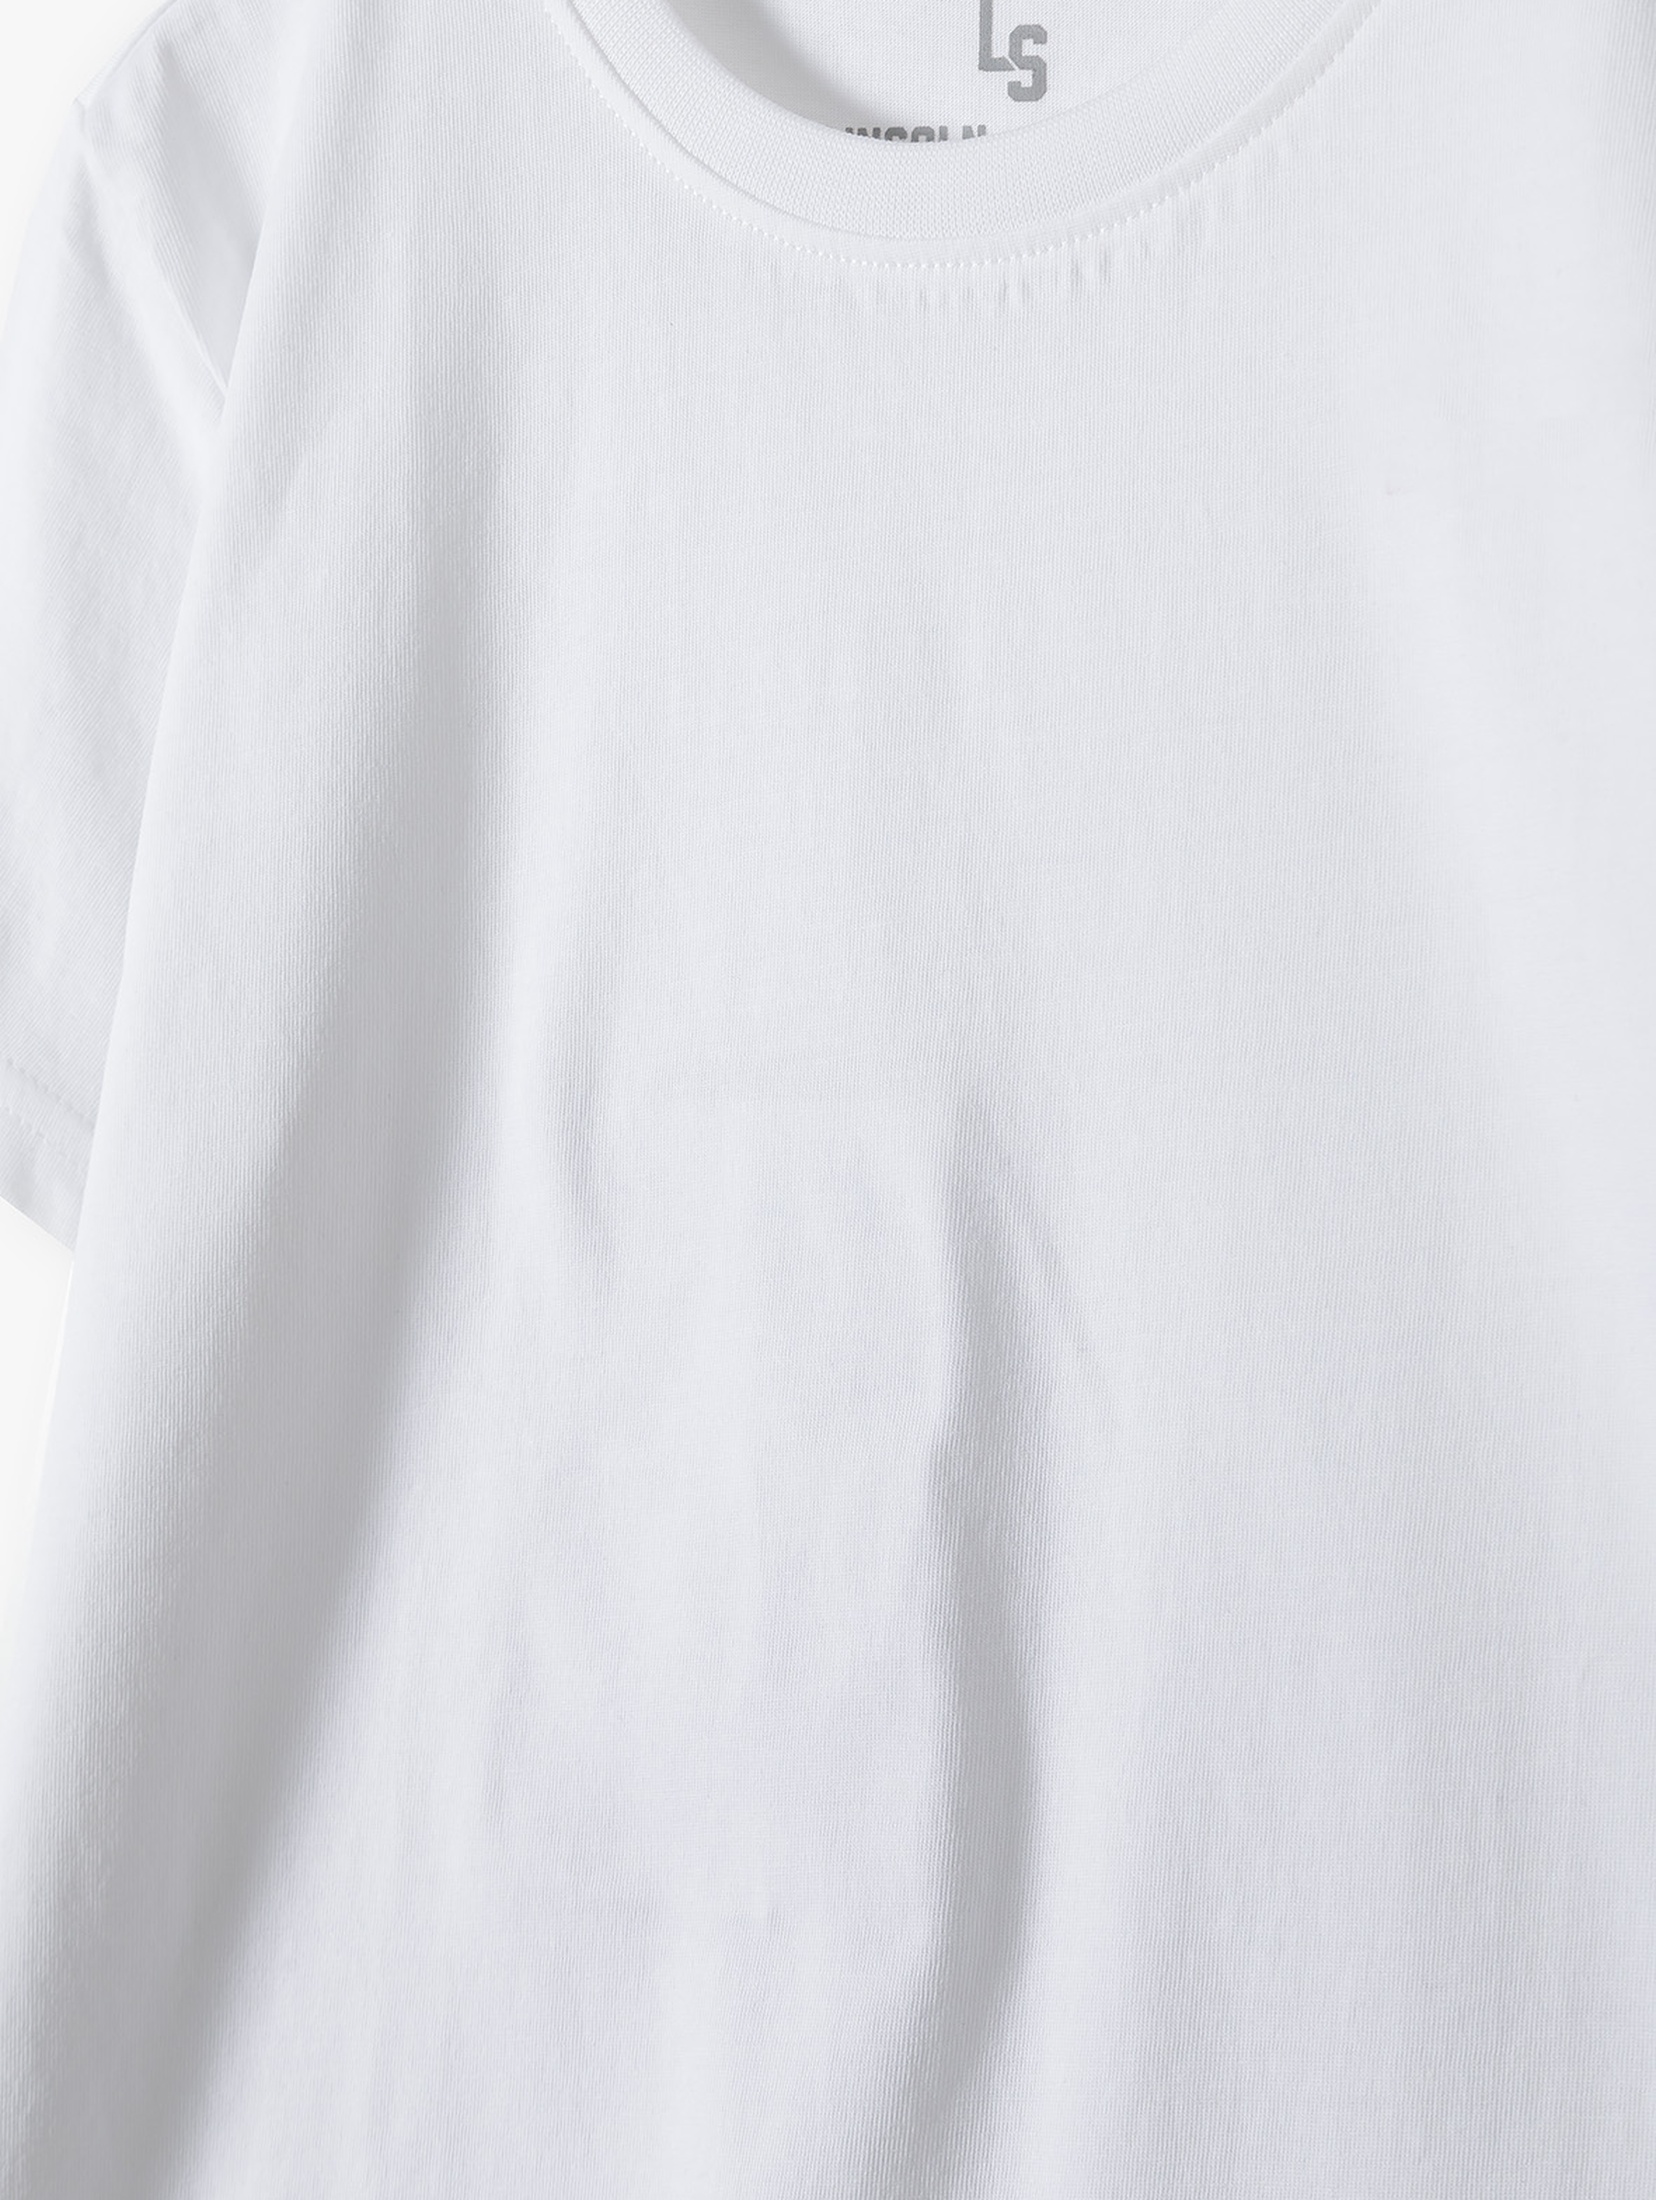 Komplet ubrań na gimnastykę - granatowe szorty + biały t-shirt + worek